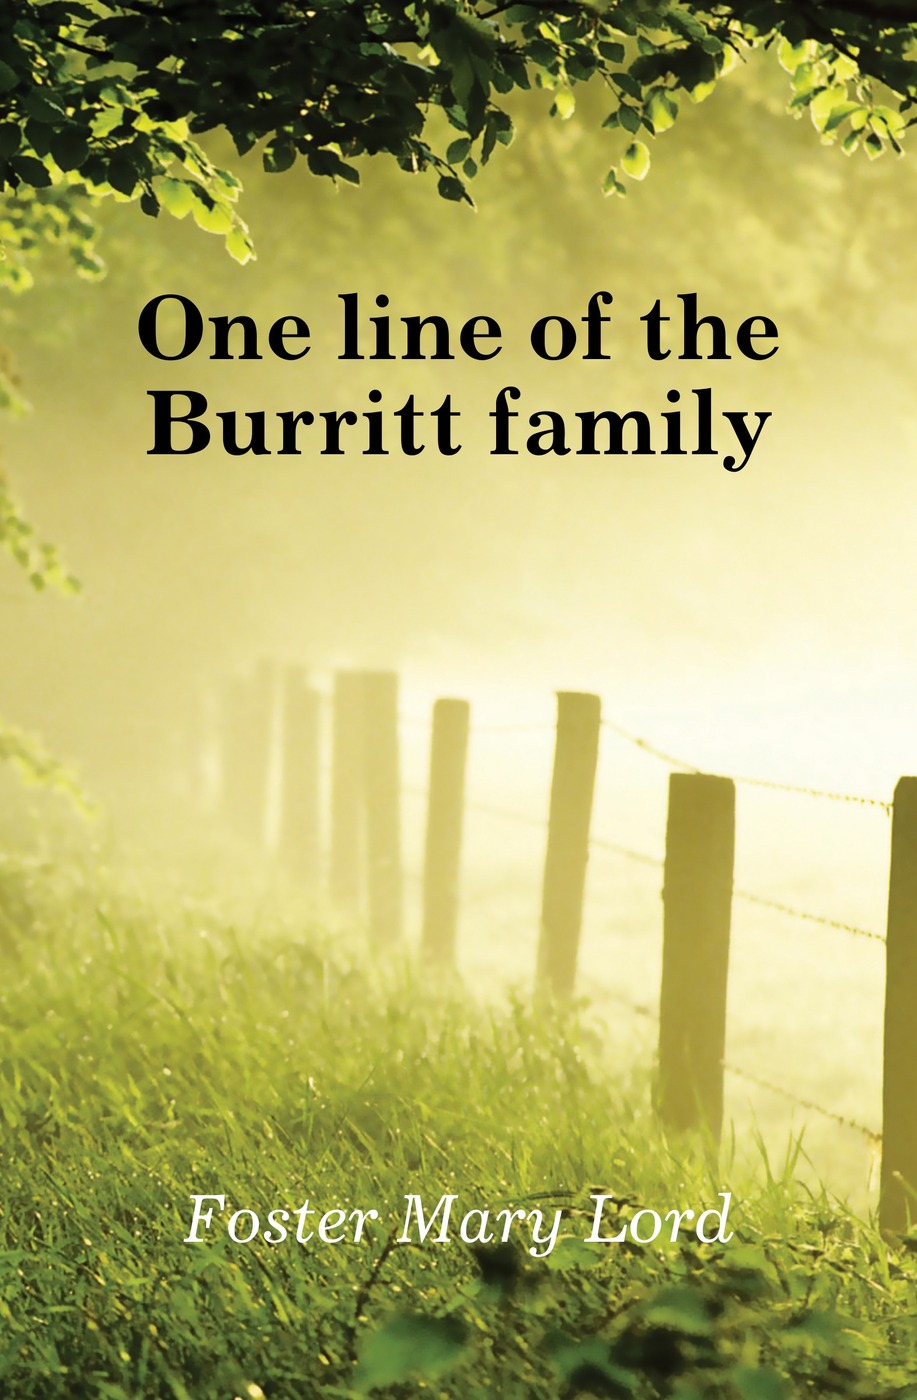 One line of the Burritt family